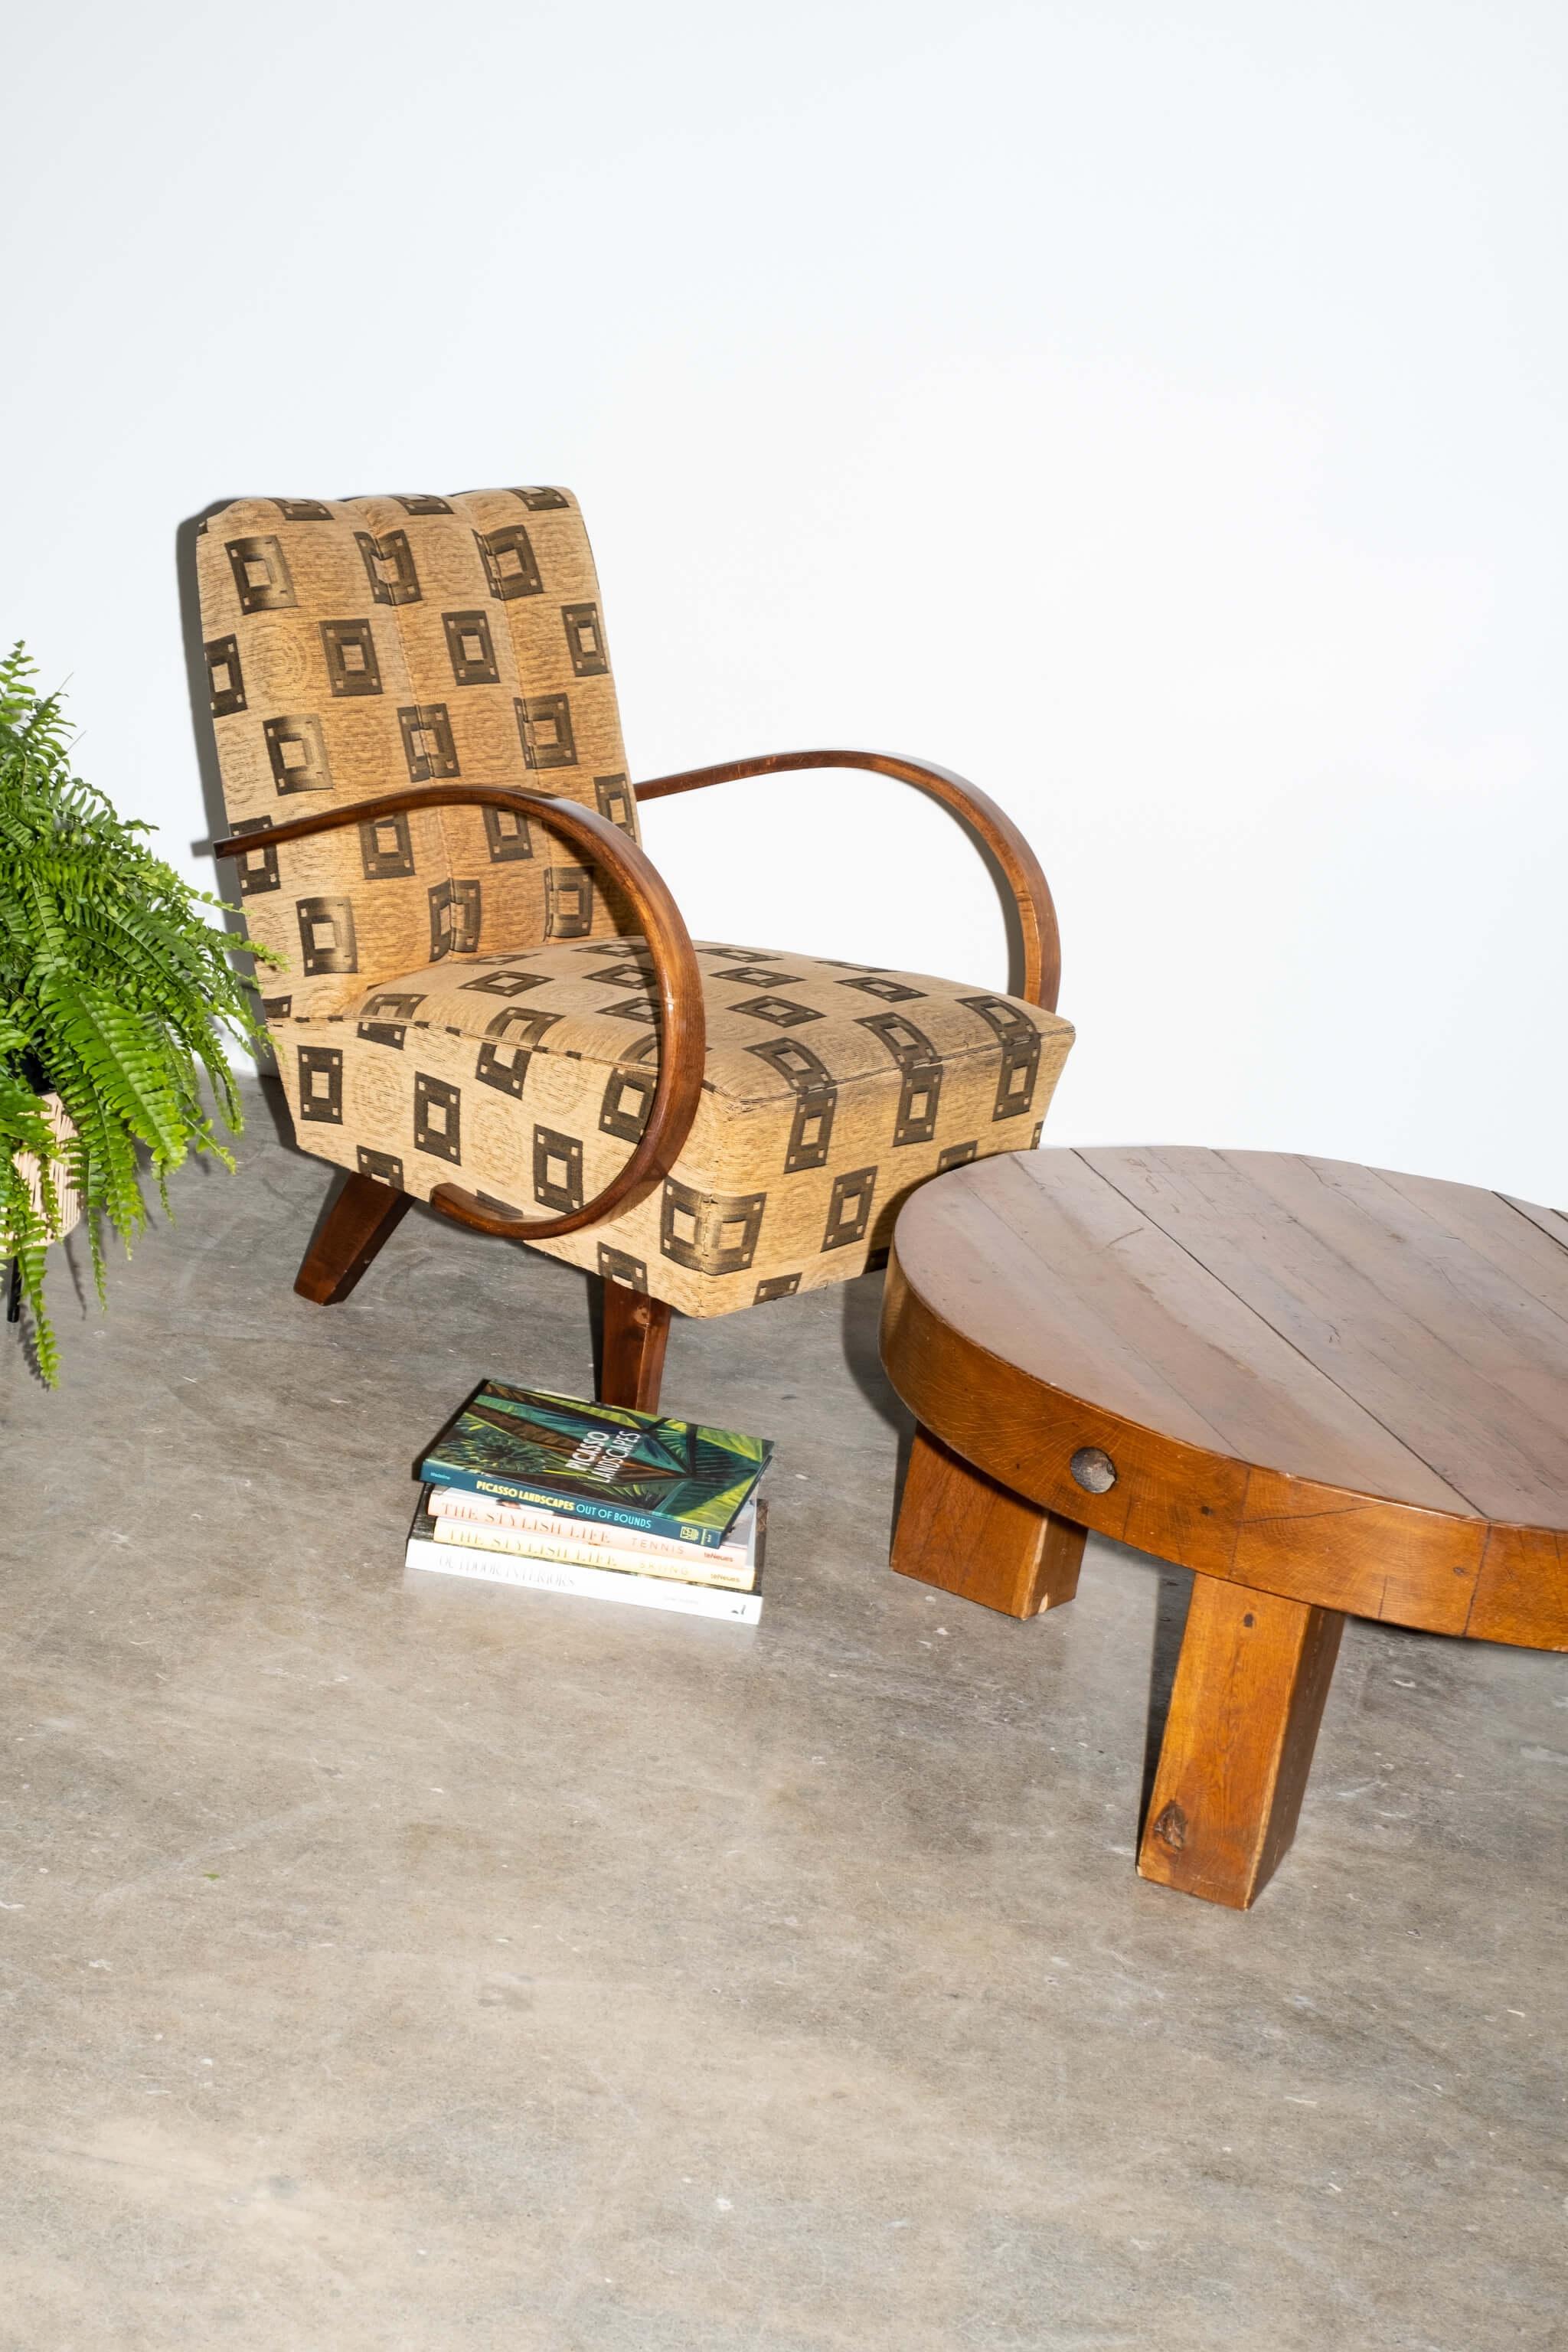 Le lourd plateau rond de cette table basse de style brutaliste repose simplement sur 4 blocs de bois. Simplicité, chaleur et rusticité.